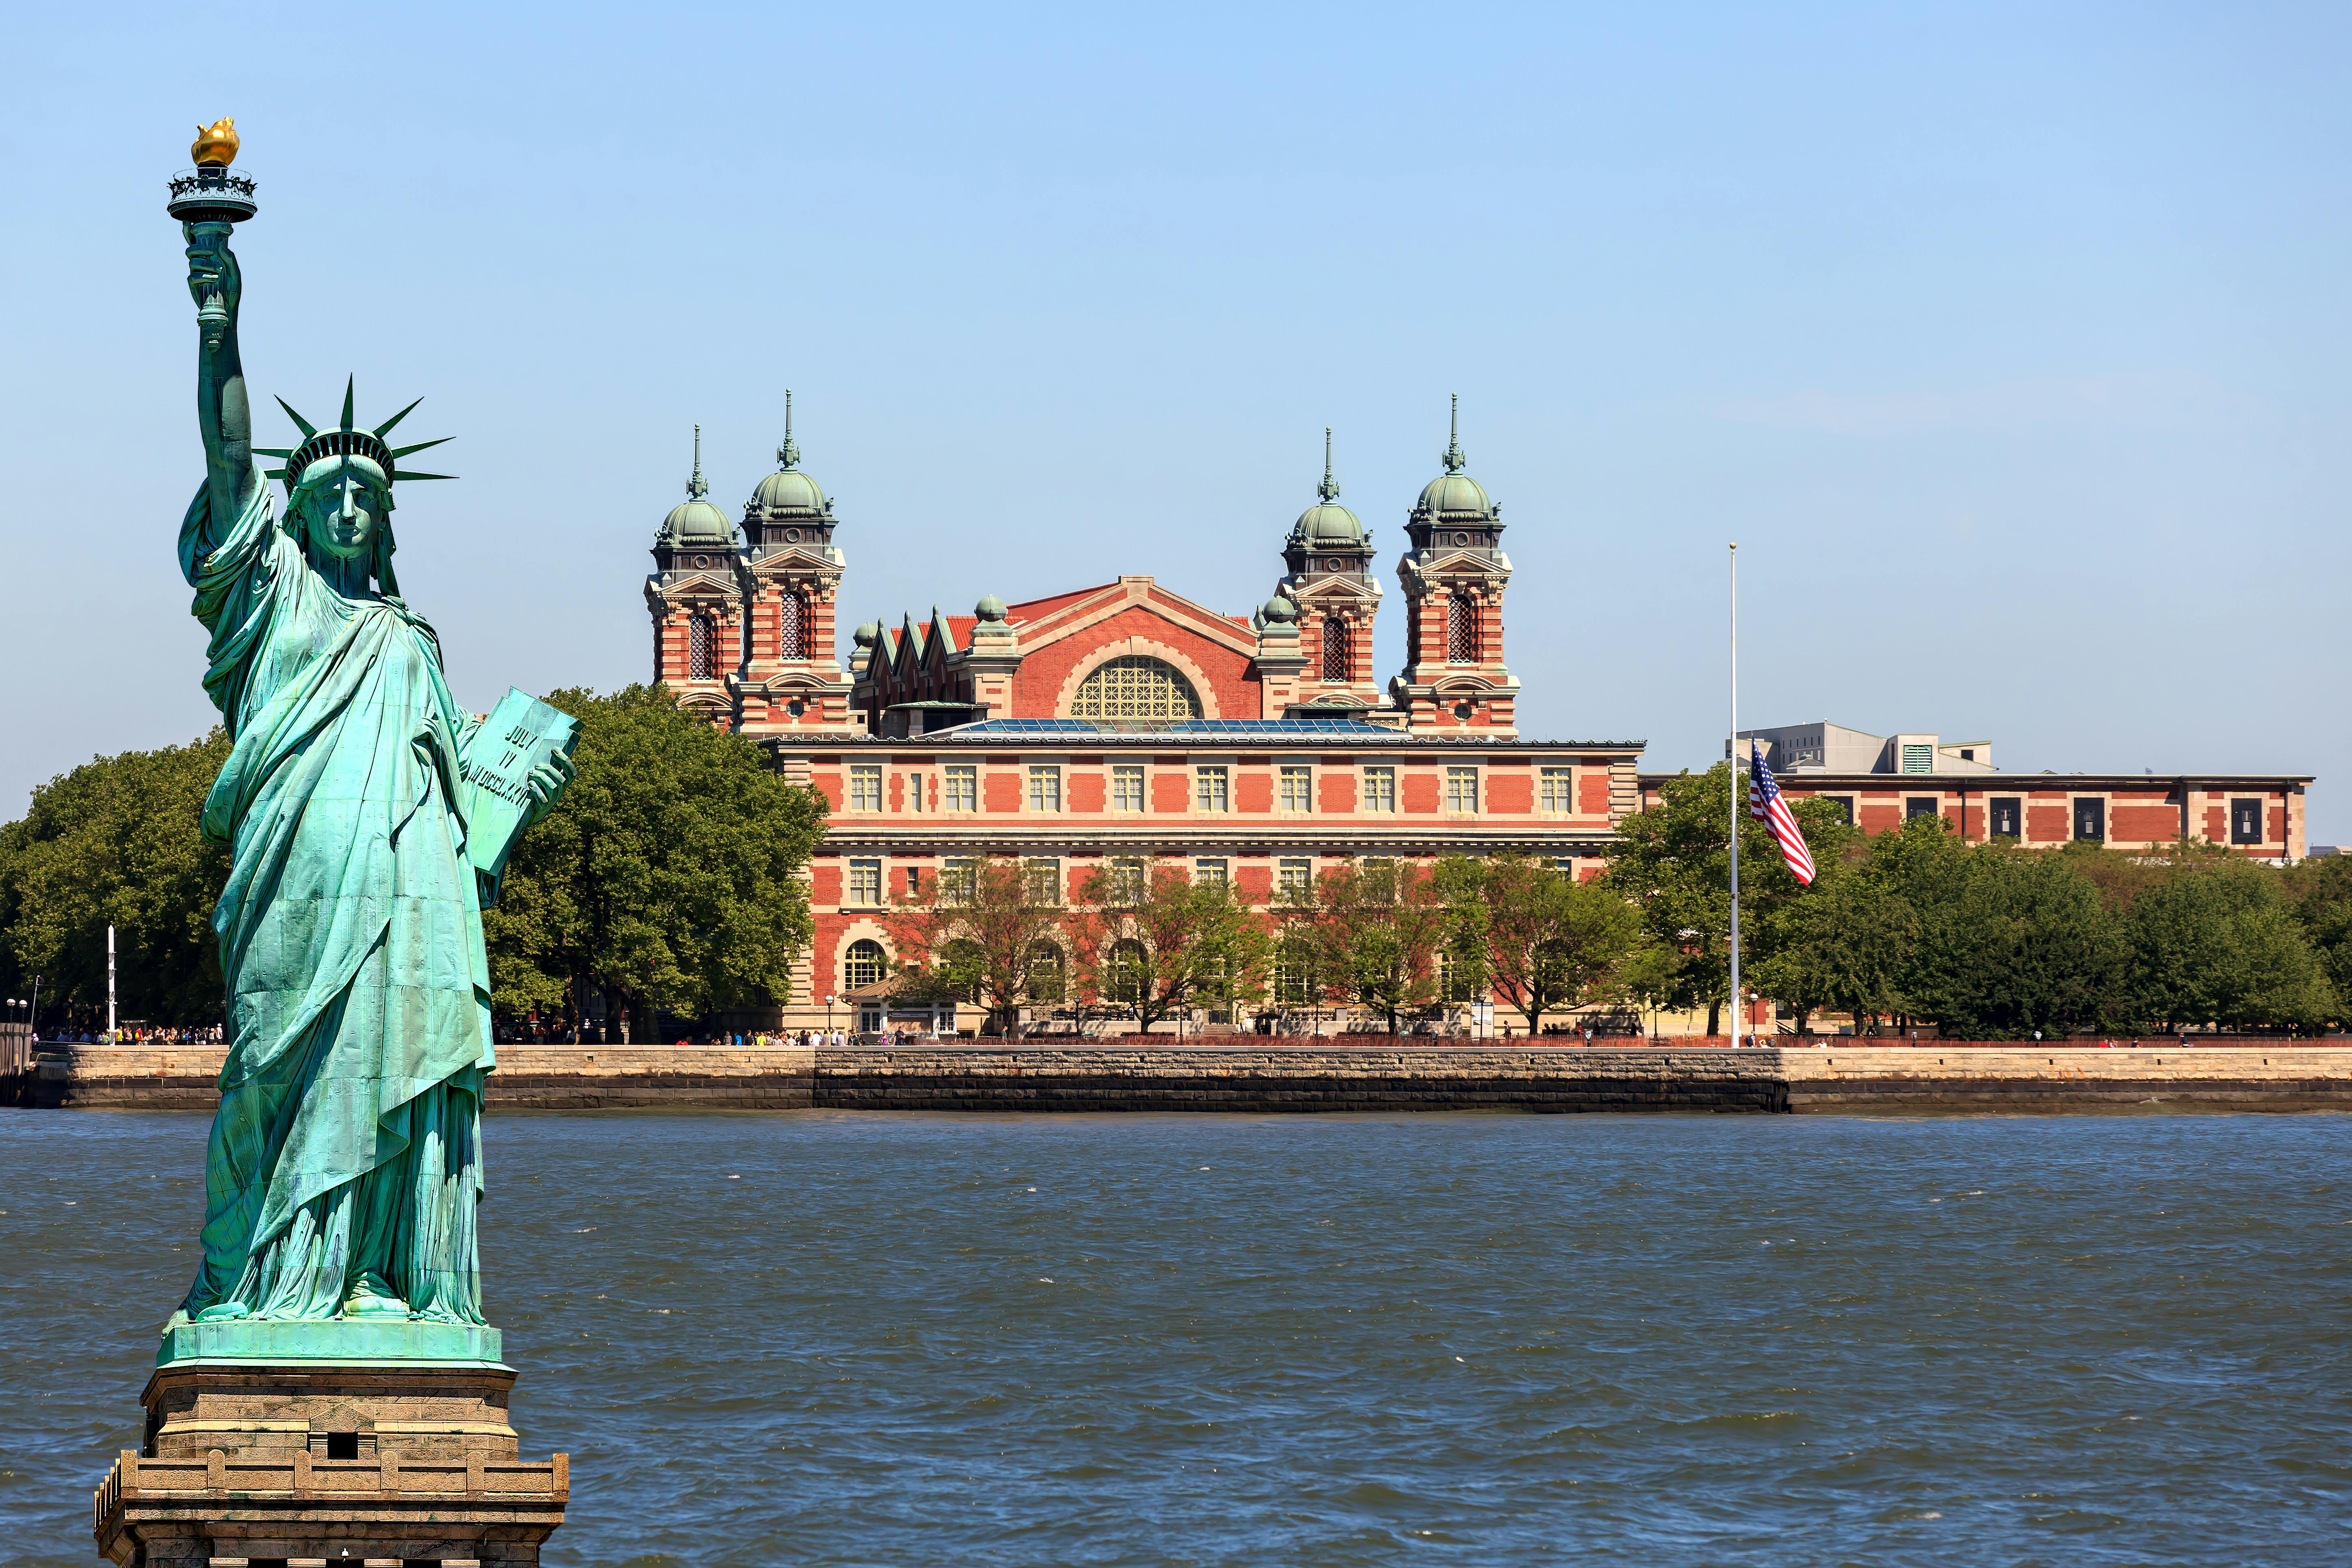 Accesso VIP: tour a piedi di Ellis Island, Statua della Libertà e Battery Park